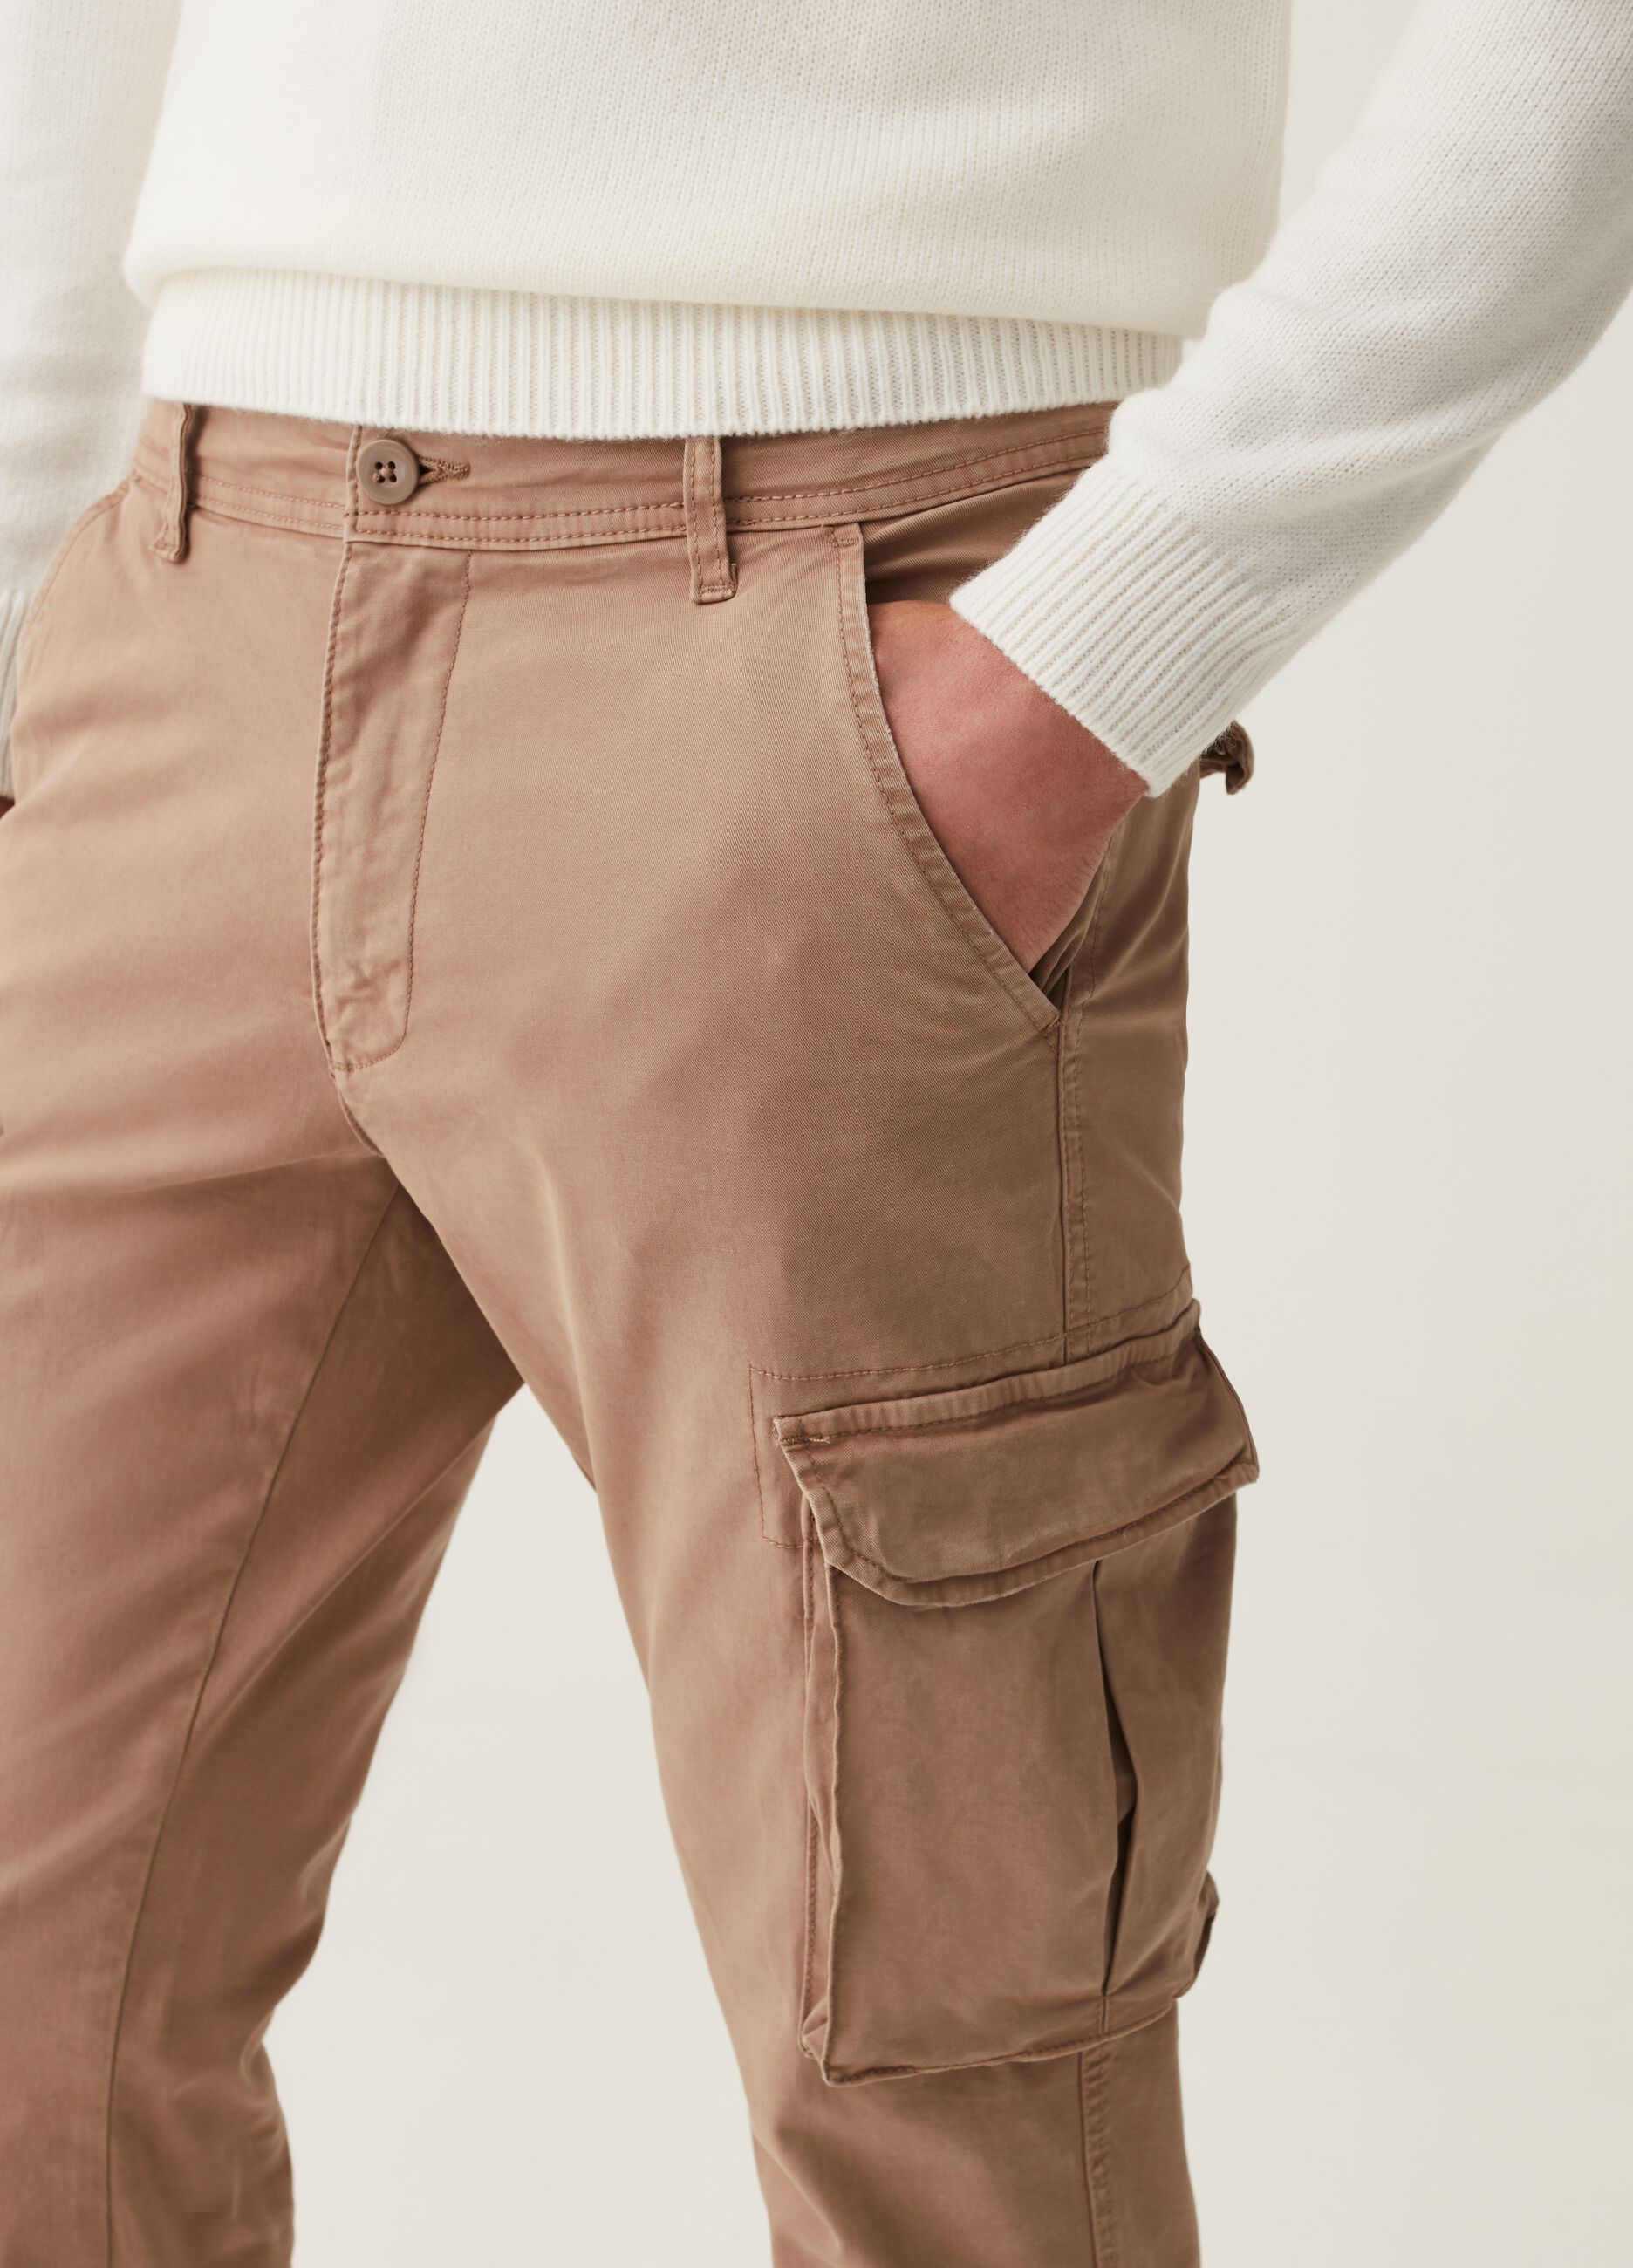 Pantalone cargo cuff hem in cotone stretch_3